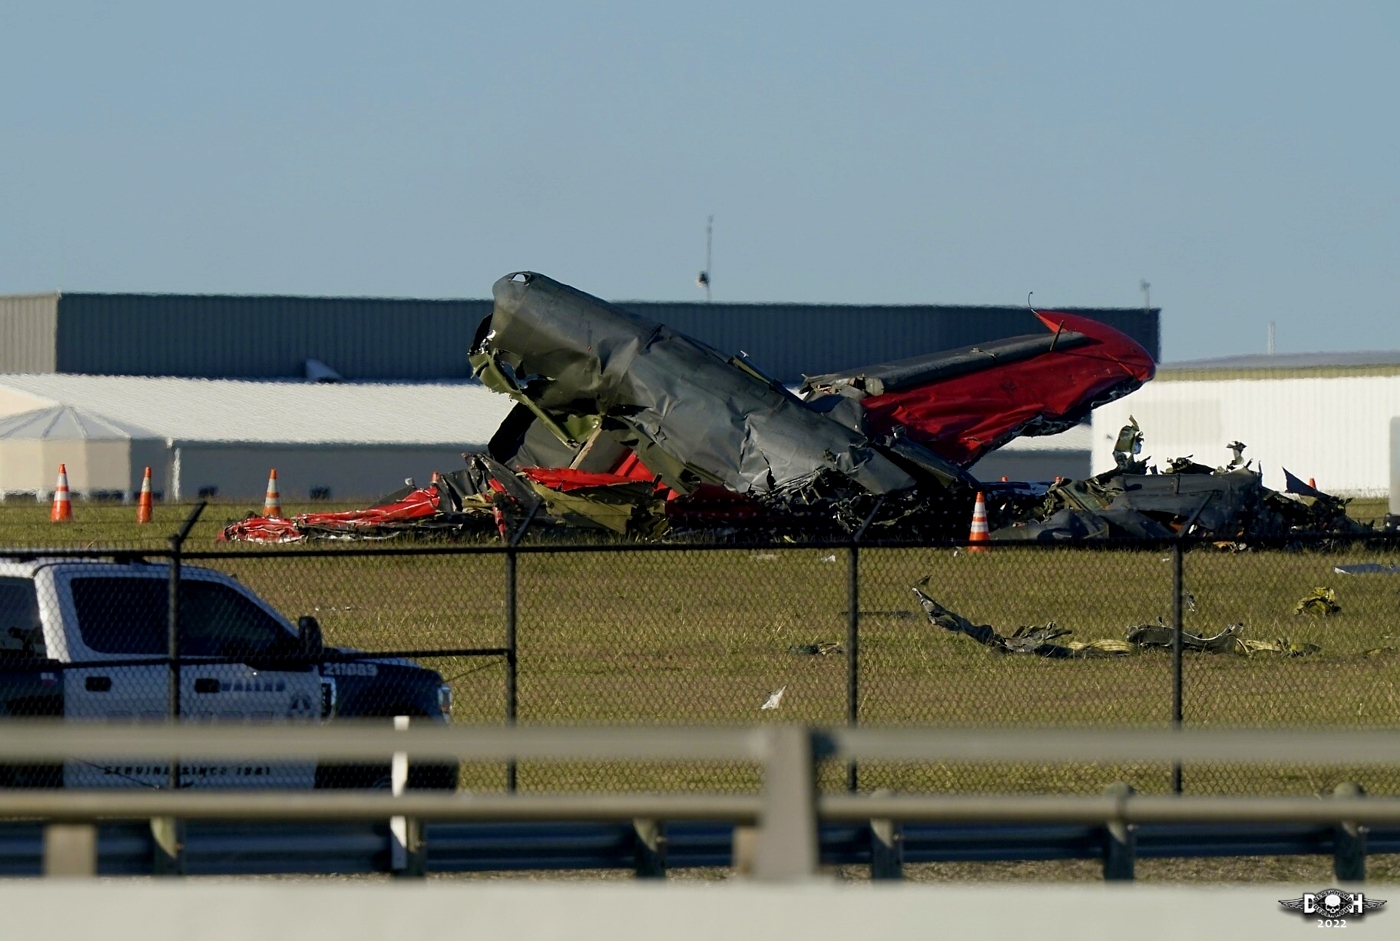 Dallas Air show crash 4 - Nov 14 2022 - DH.jpg